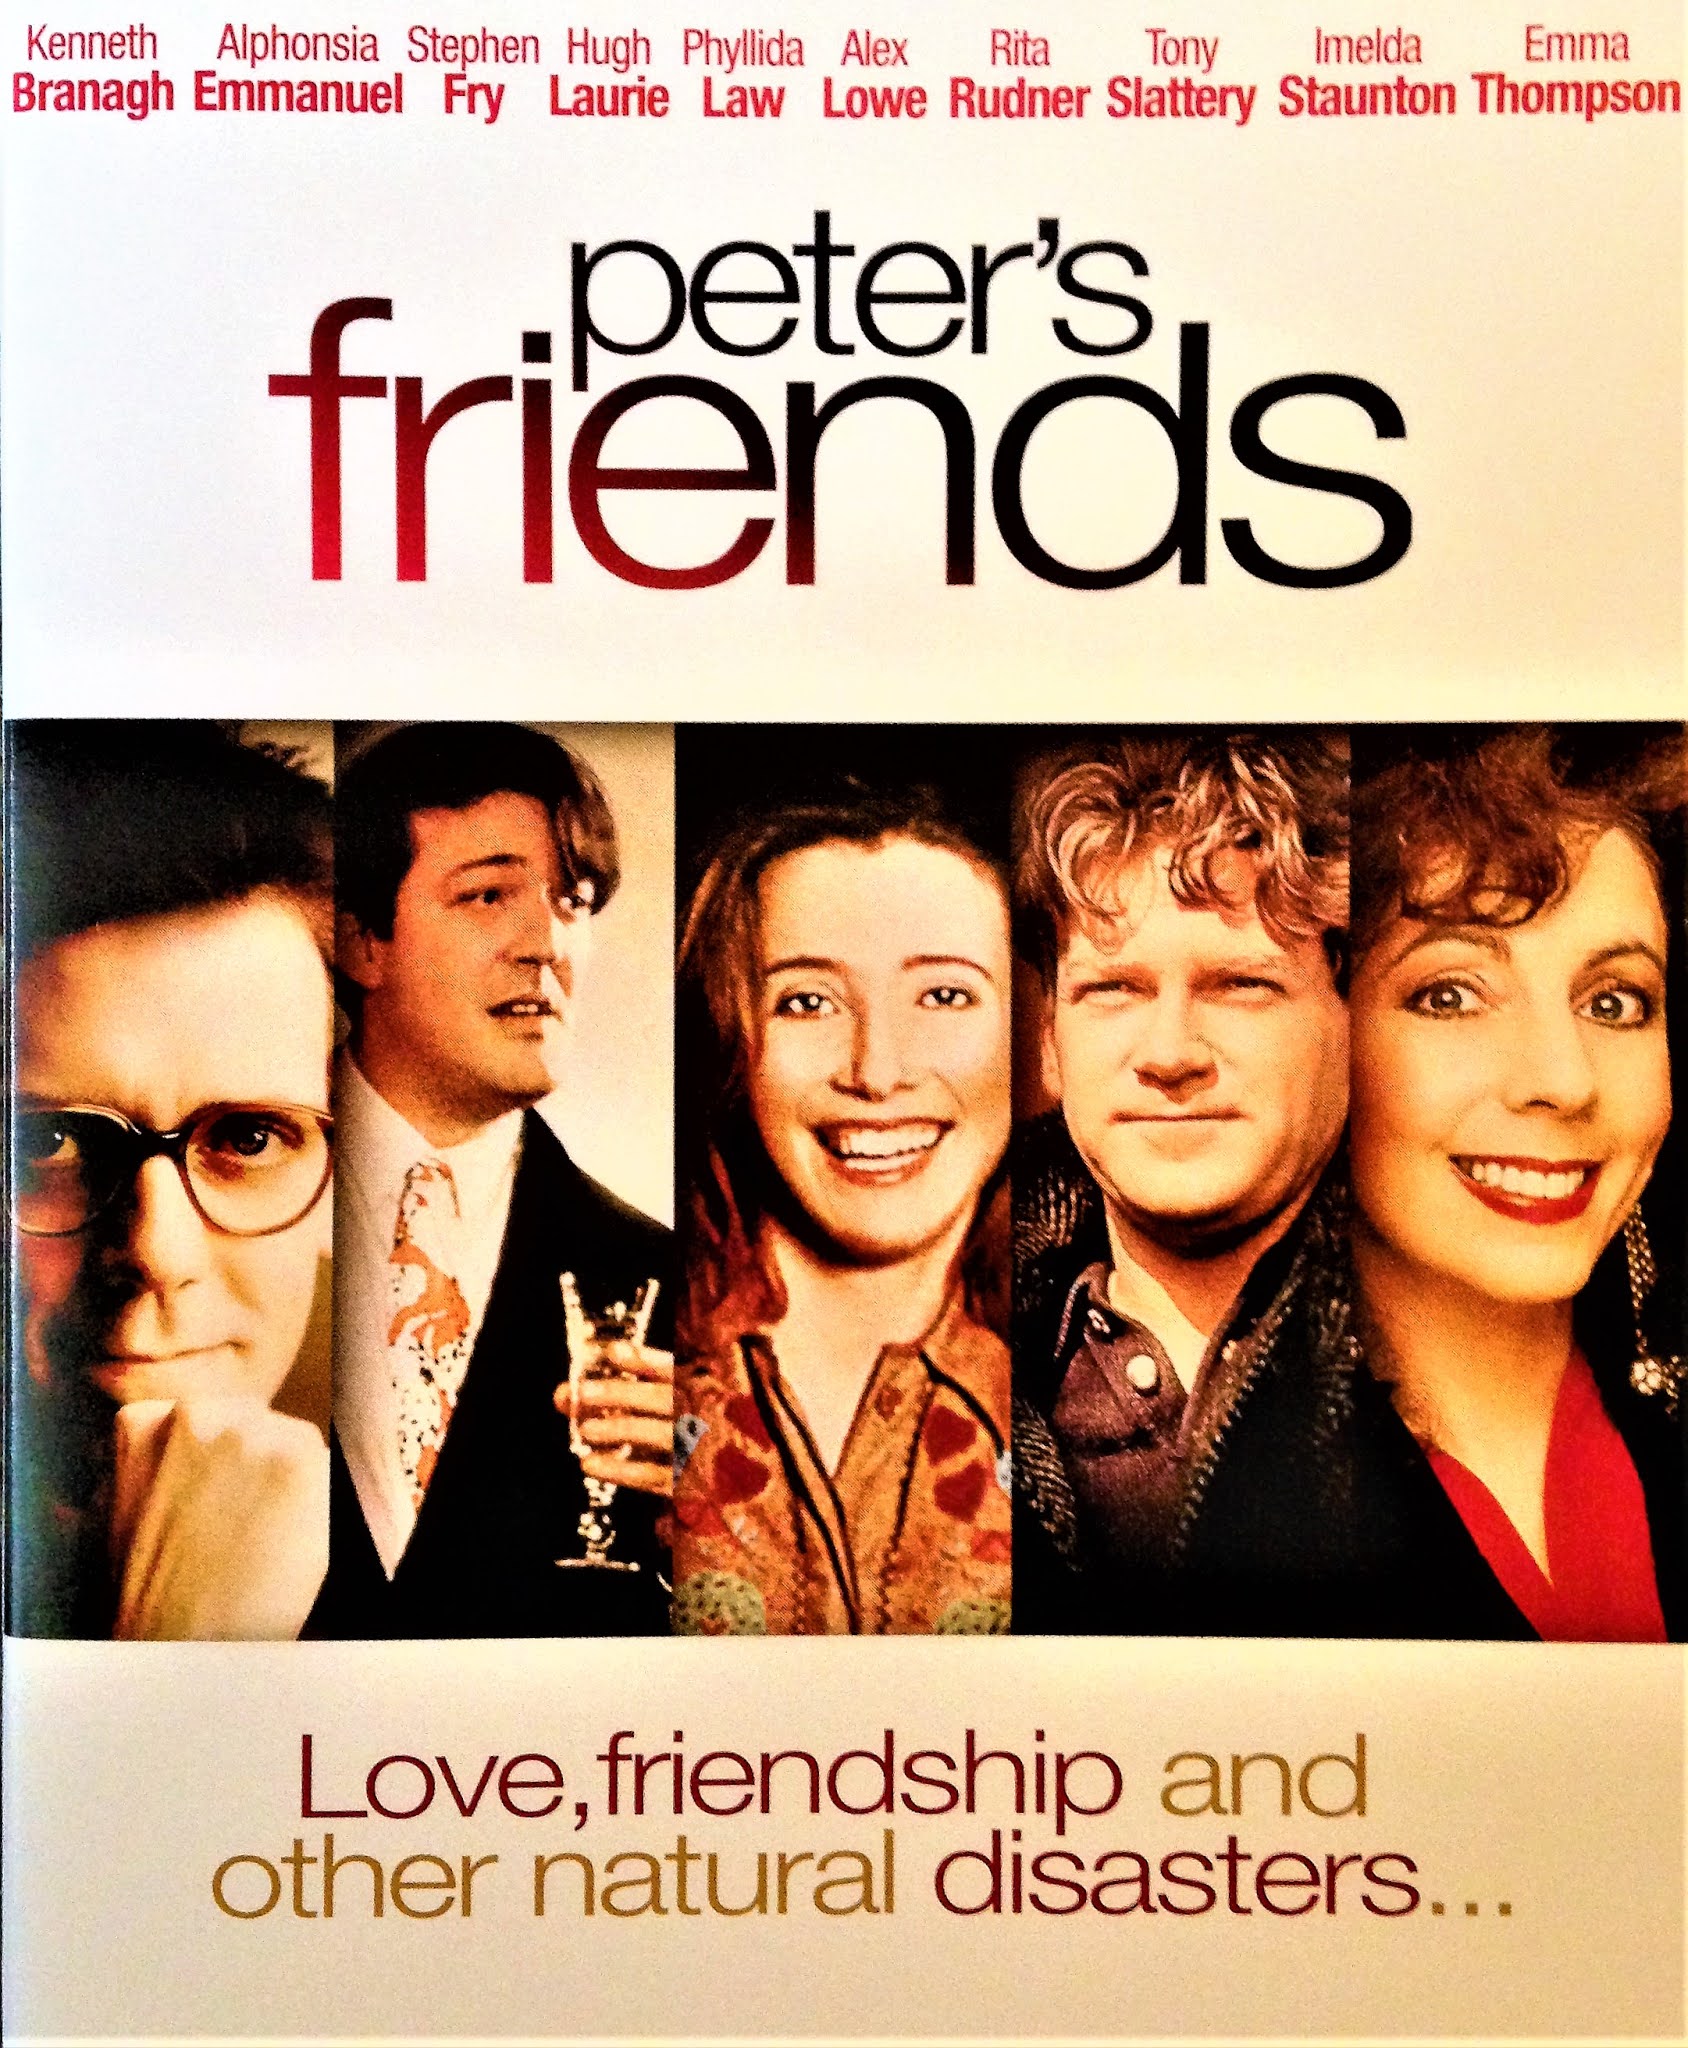 Peters friends. Peter's friends 1992. Peter’s friends (1992) poster. Друзья в Питере.